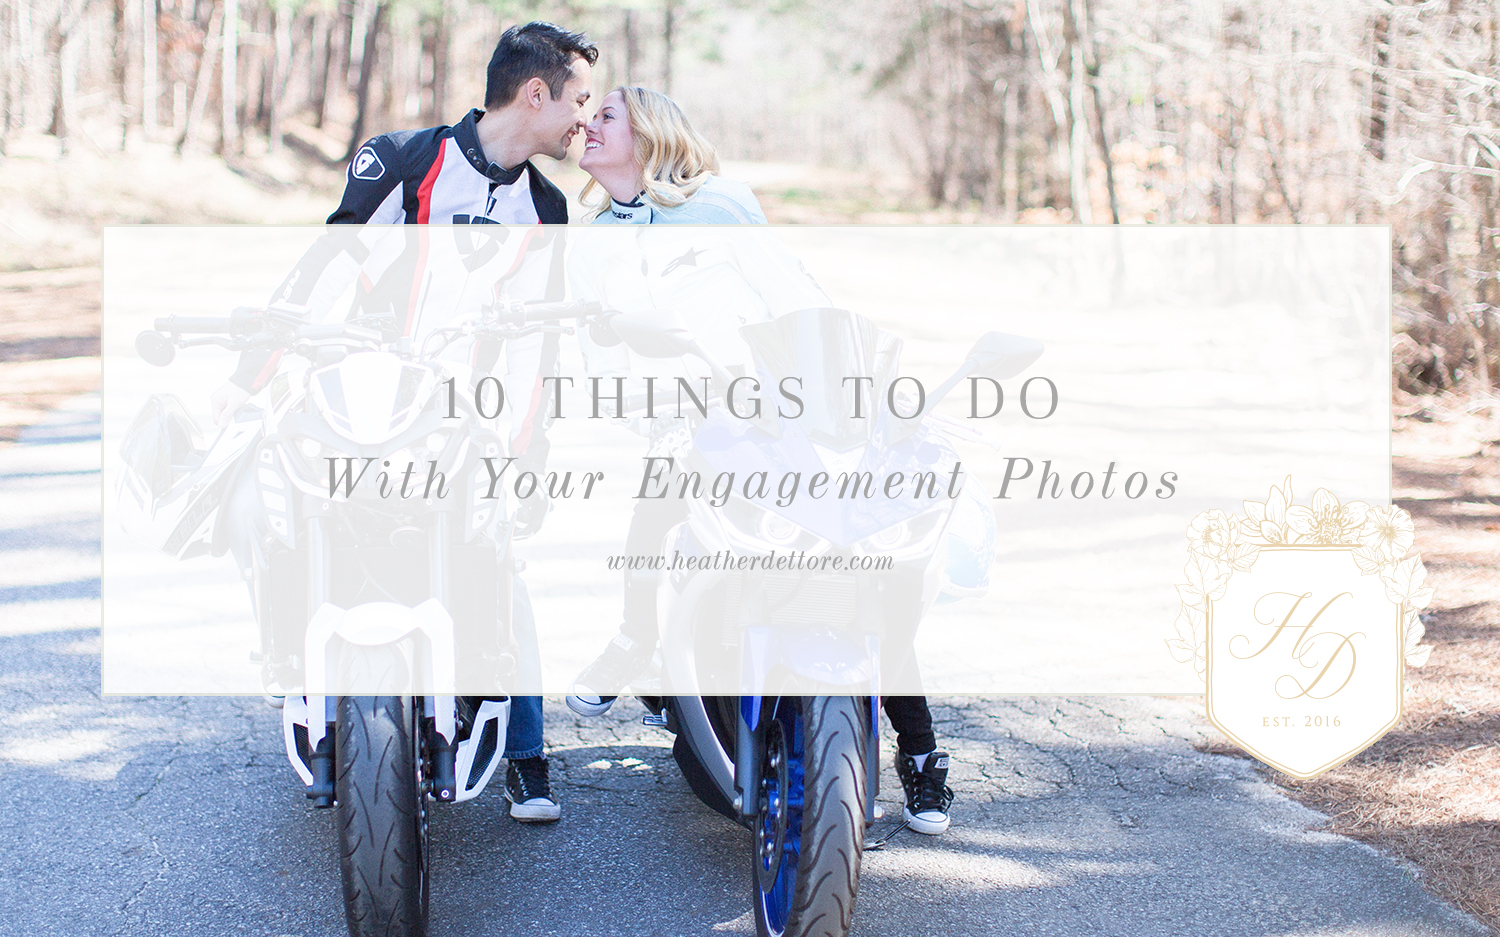 Atlanta_WEdding_Photographer_engaged_couple_engagement_how to_ tips_Advice